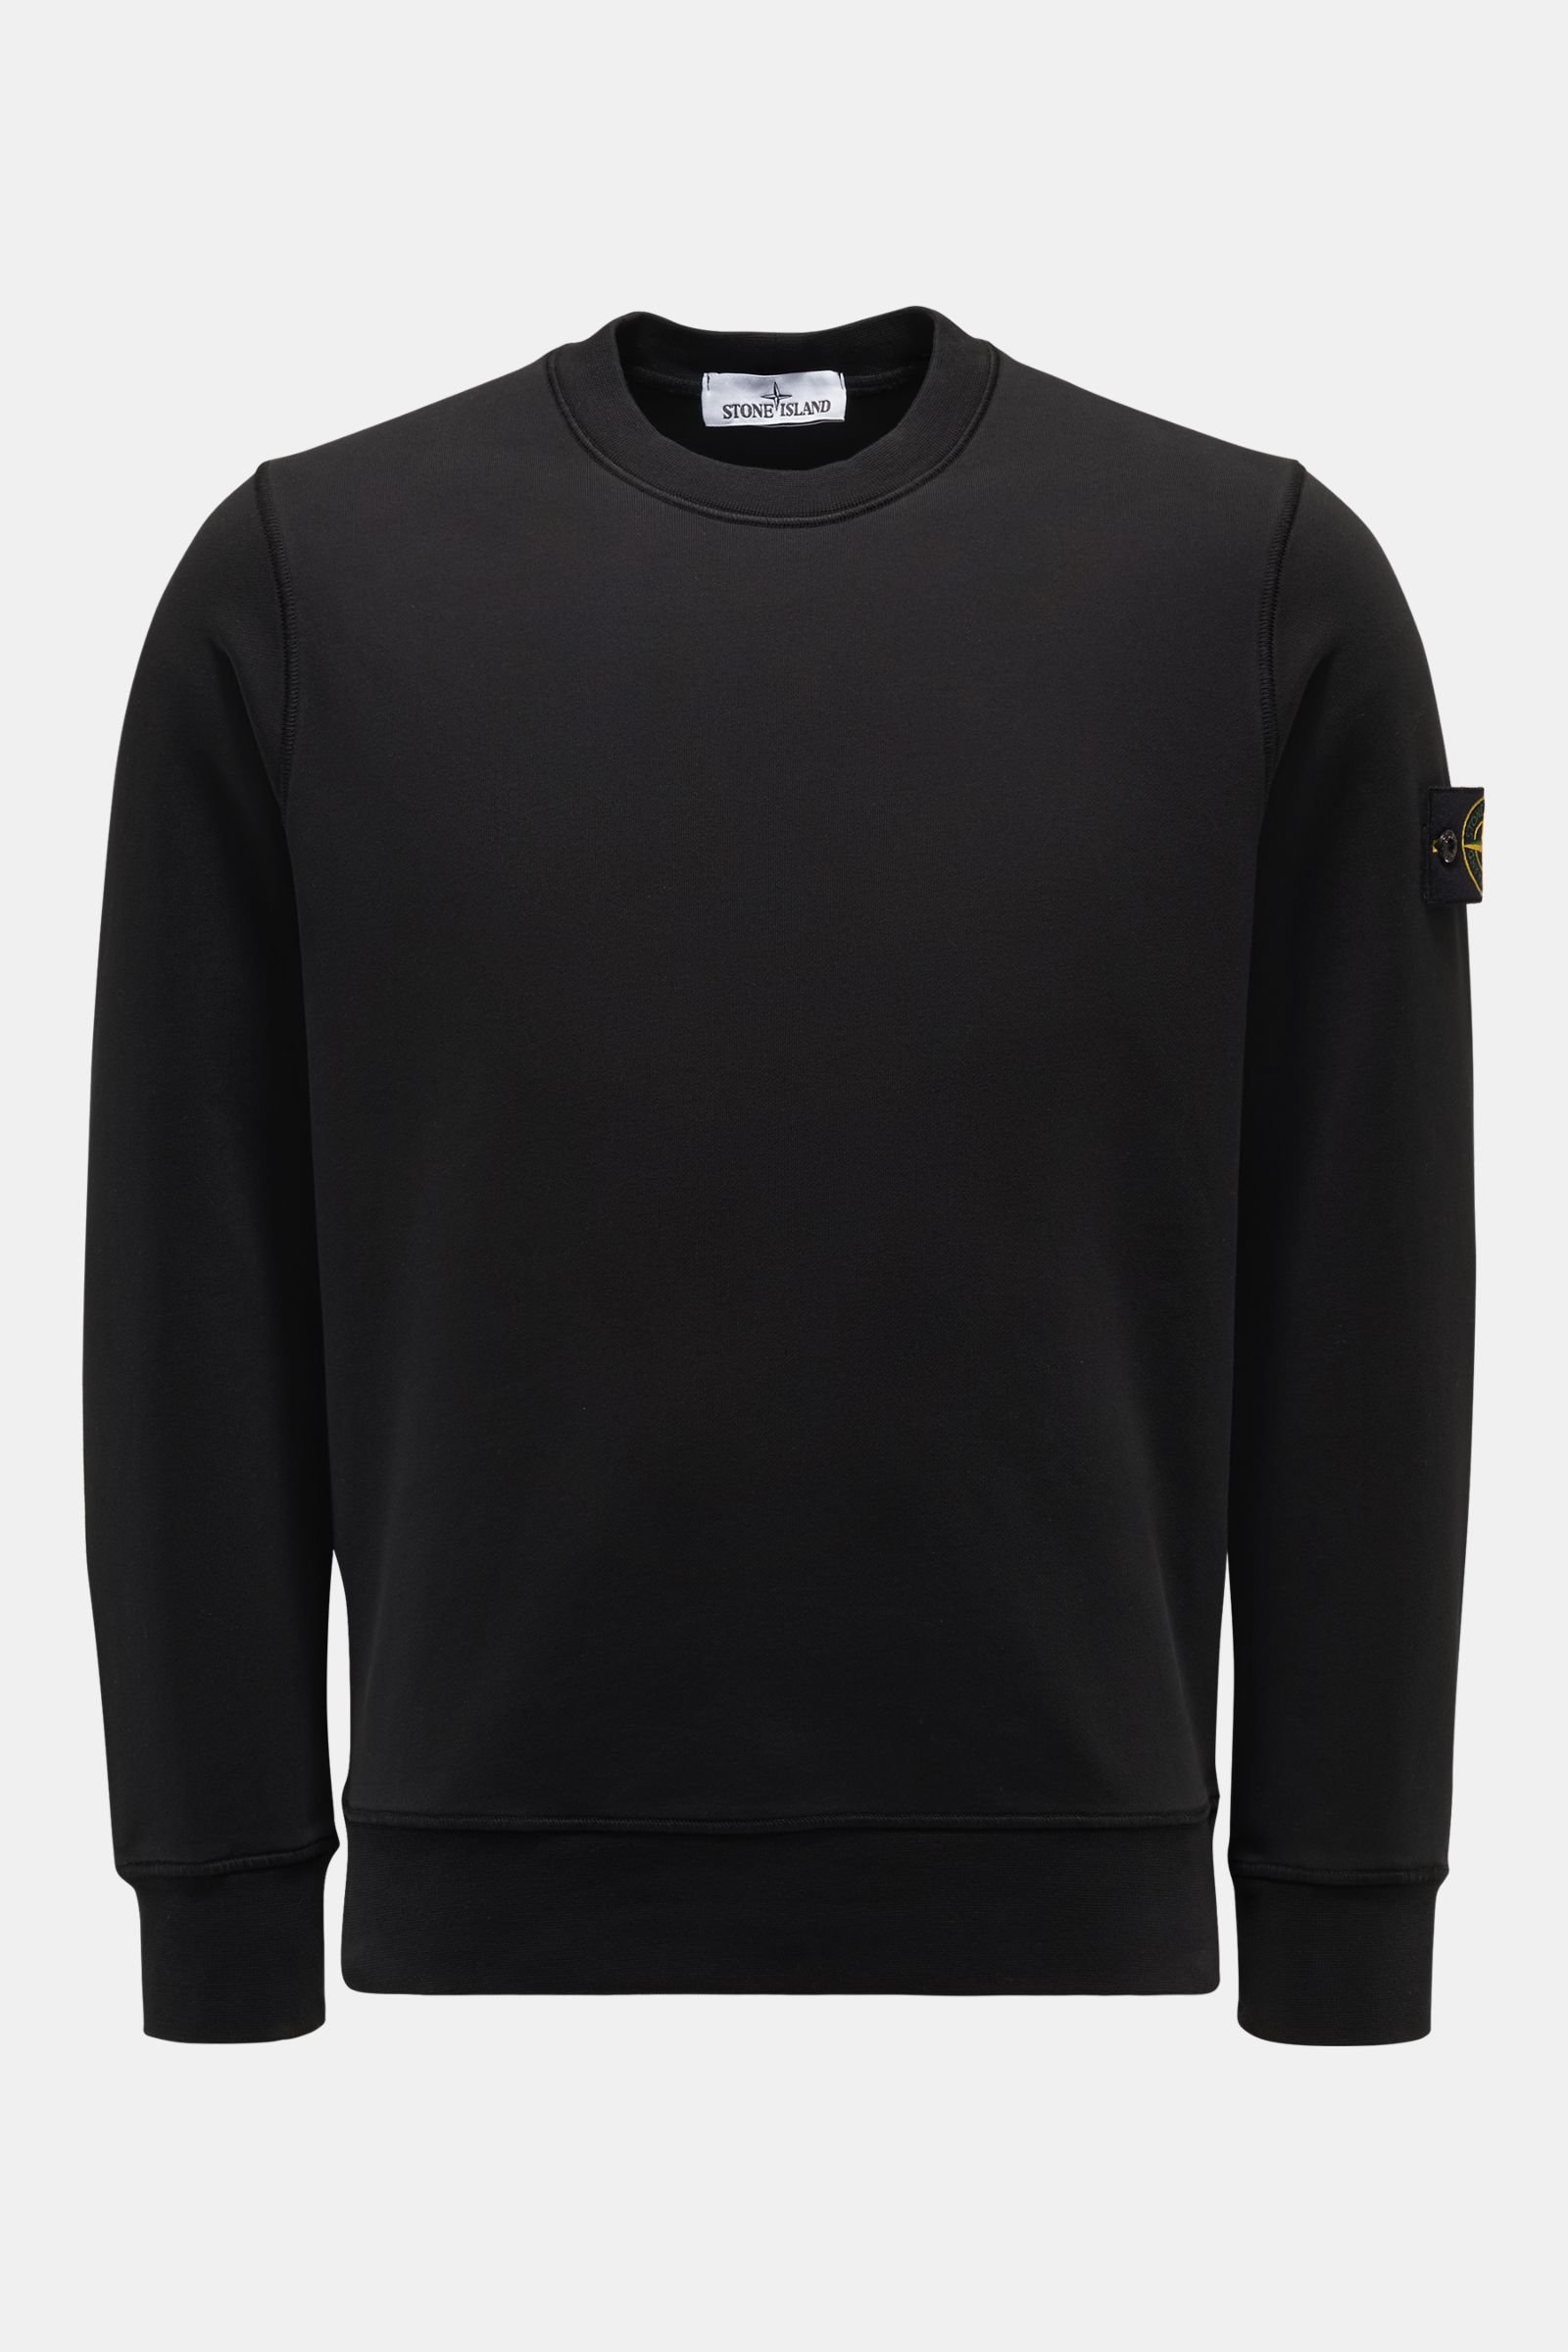 Rundhals-Sweatshirt schwarz